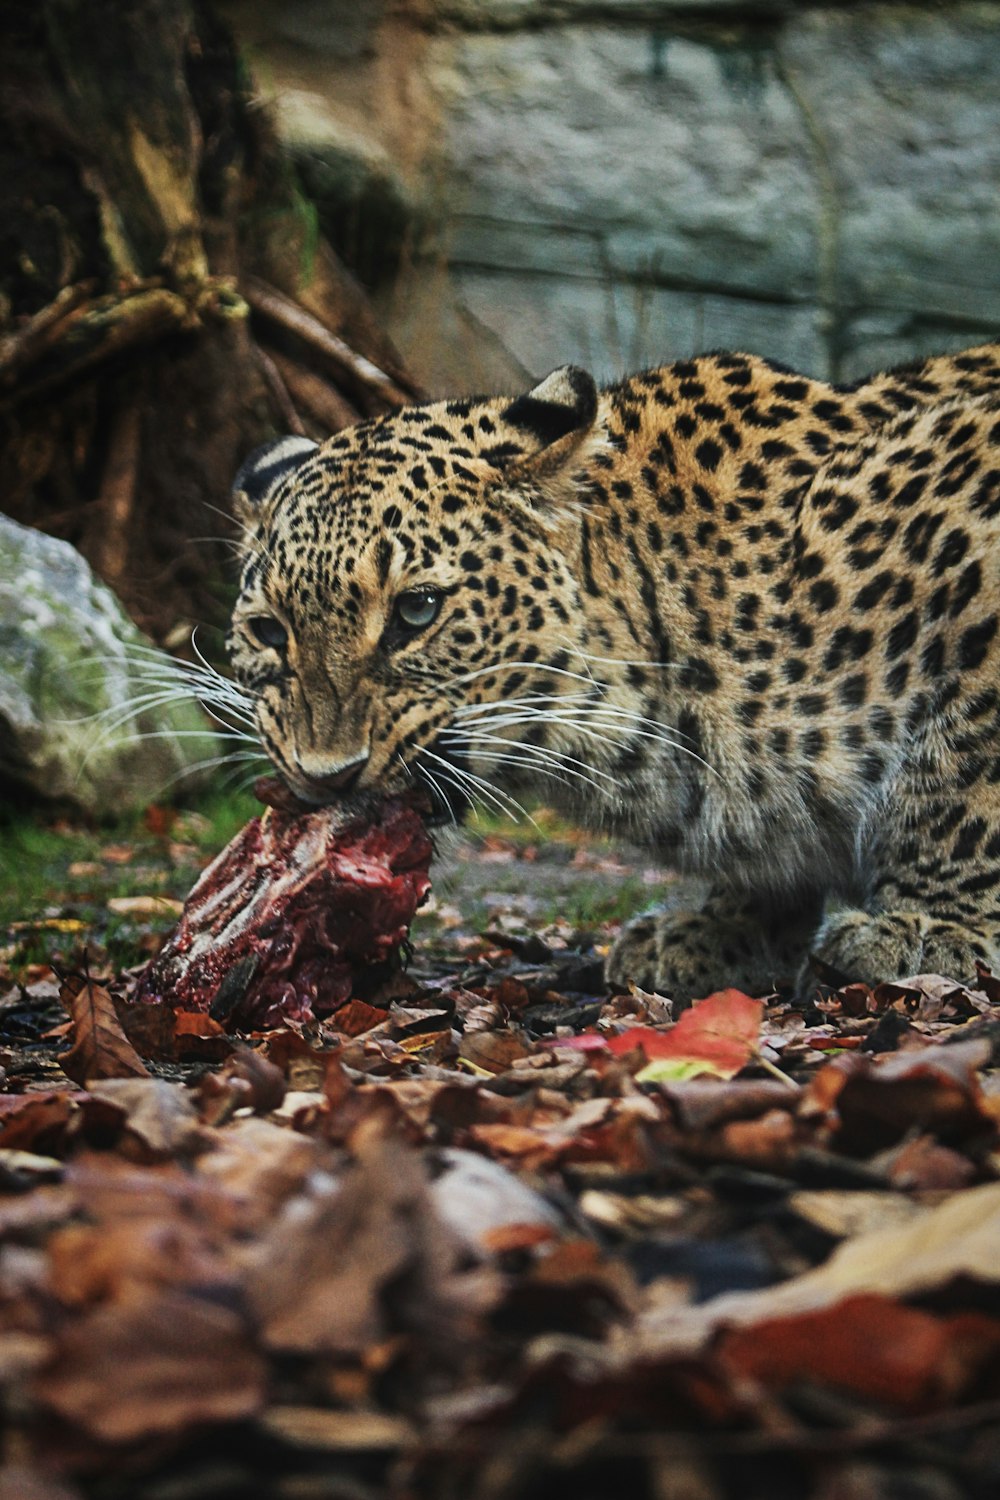 Leopard frisst rohes Fleisch